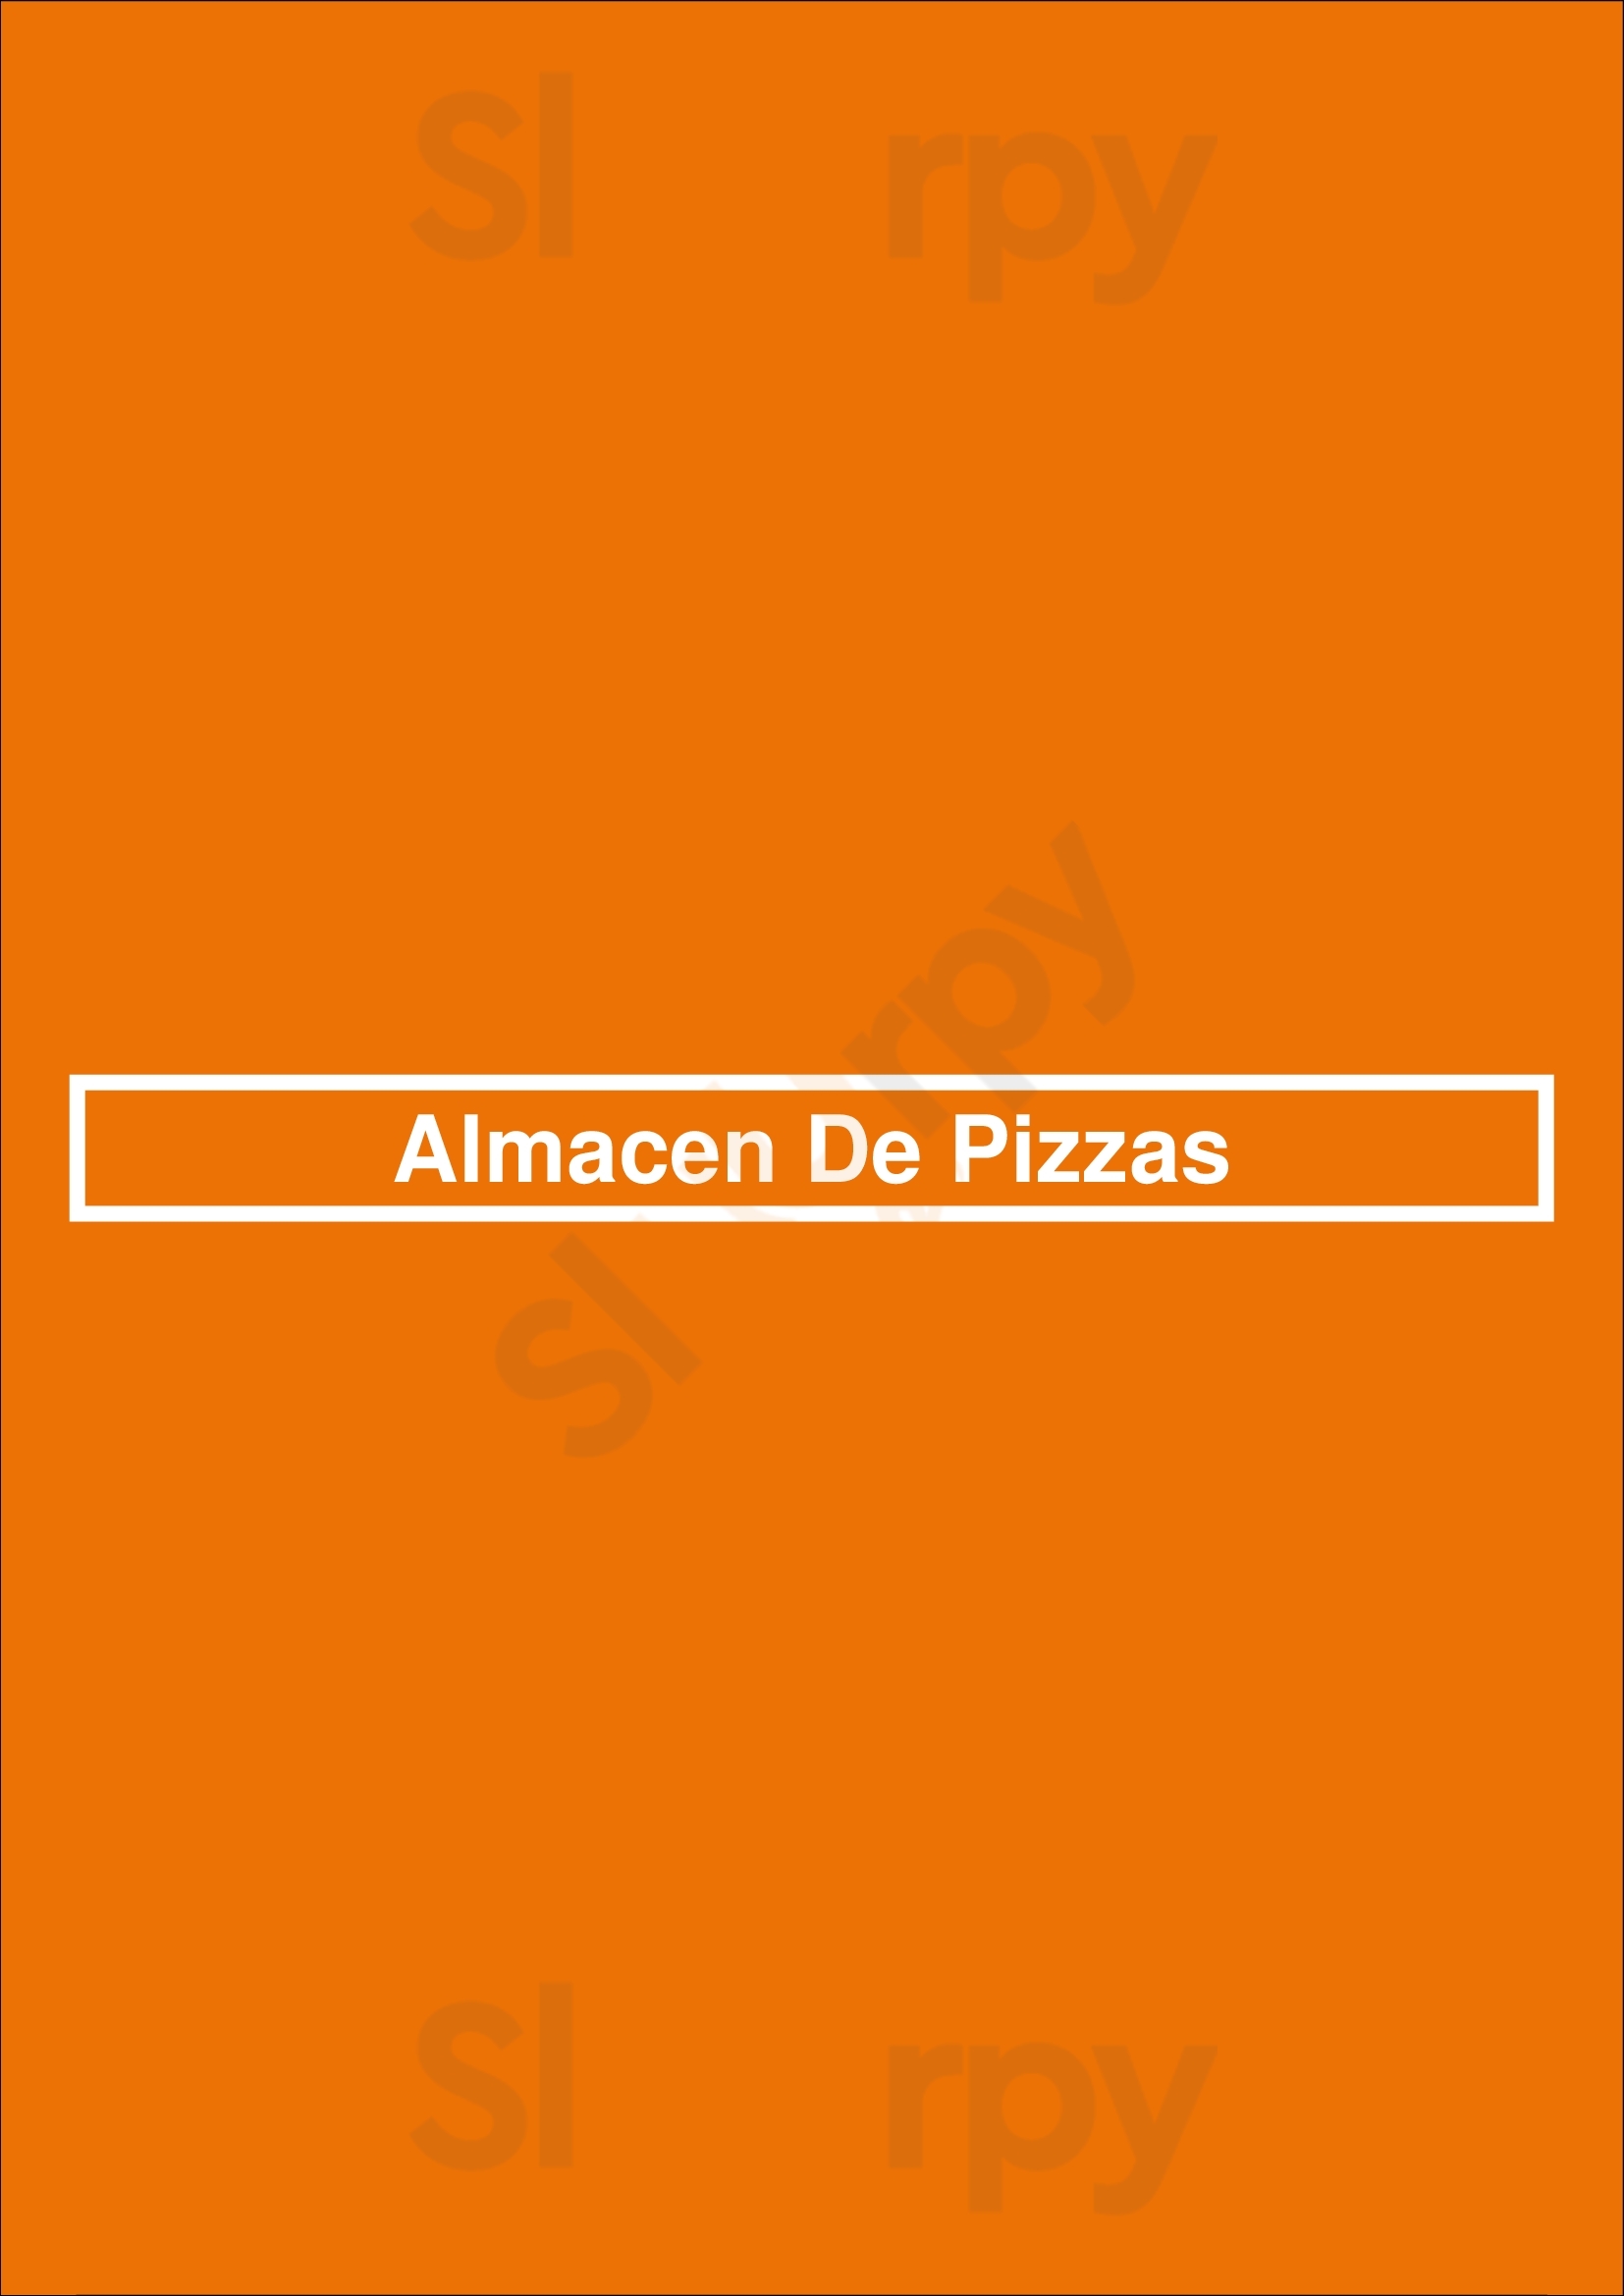 Almacen De Pizzas Martínez Menu - 1